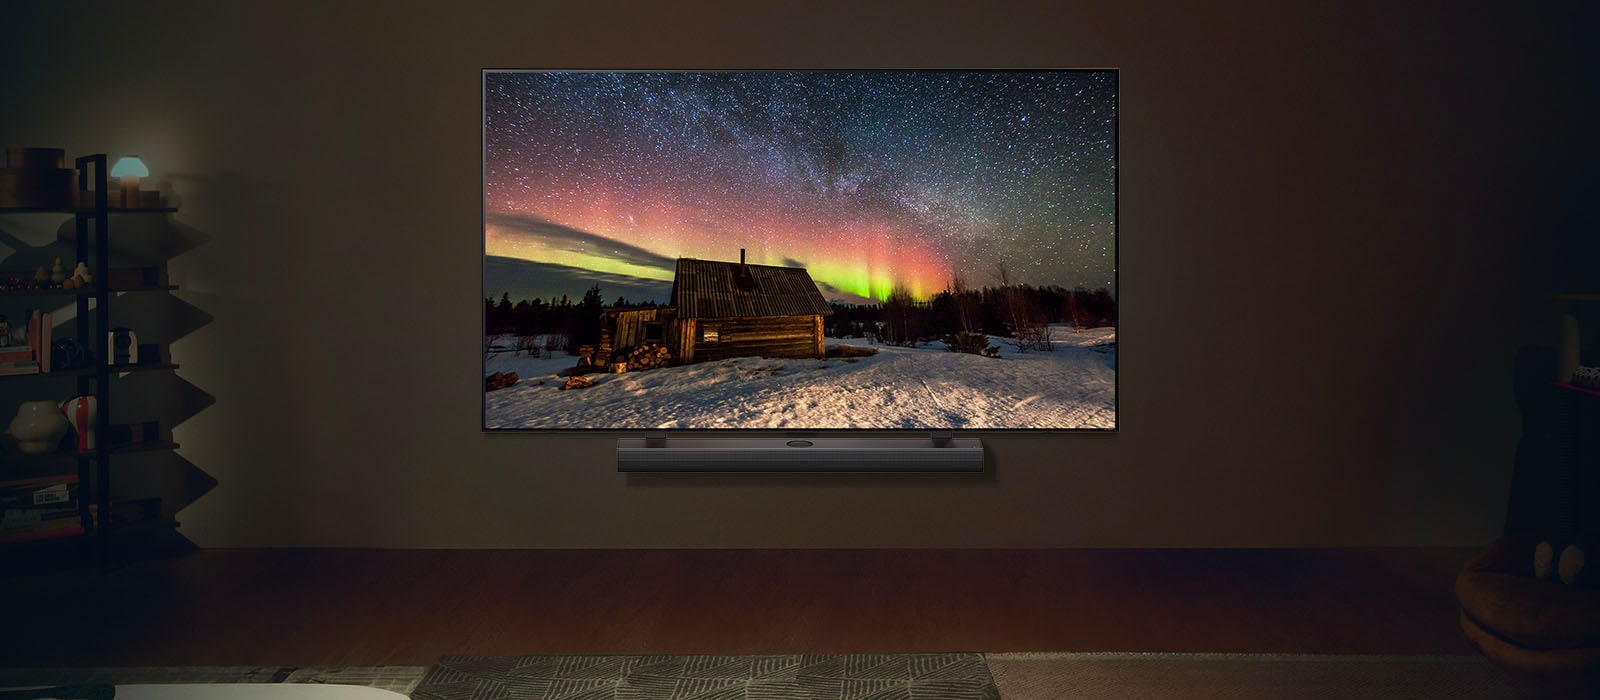 LG TV og LG Soundbar i en moderne stue om natten. Skjermbildet av nordlyset vises med ideelle lysnivåer.